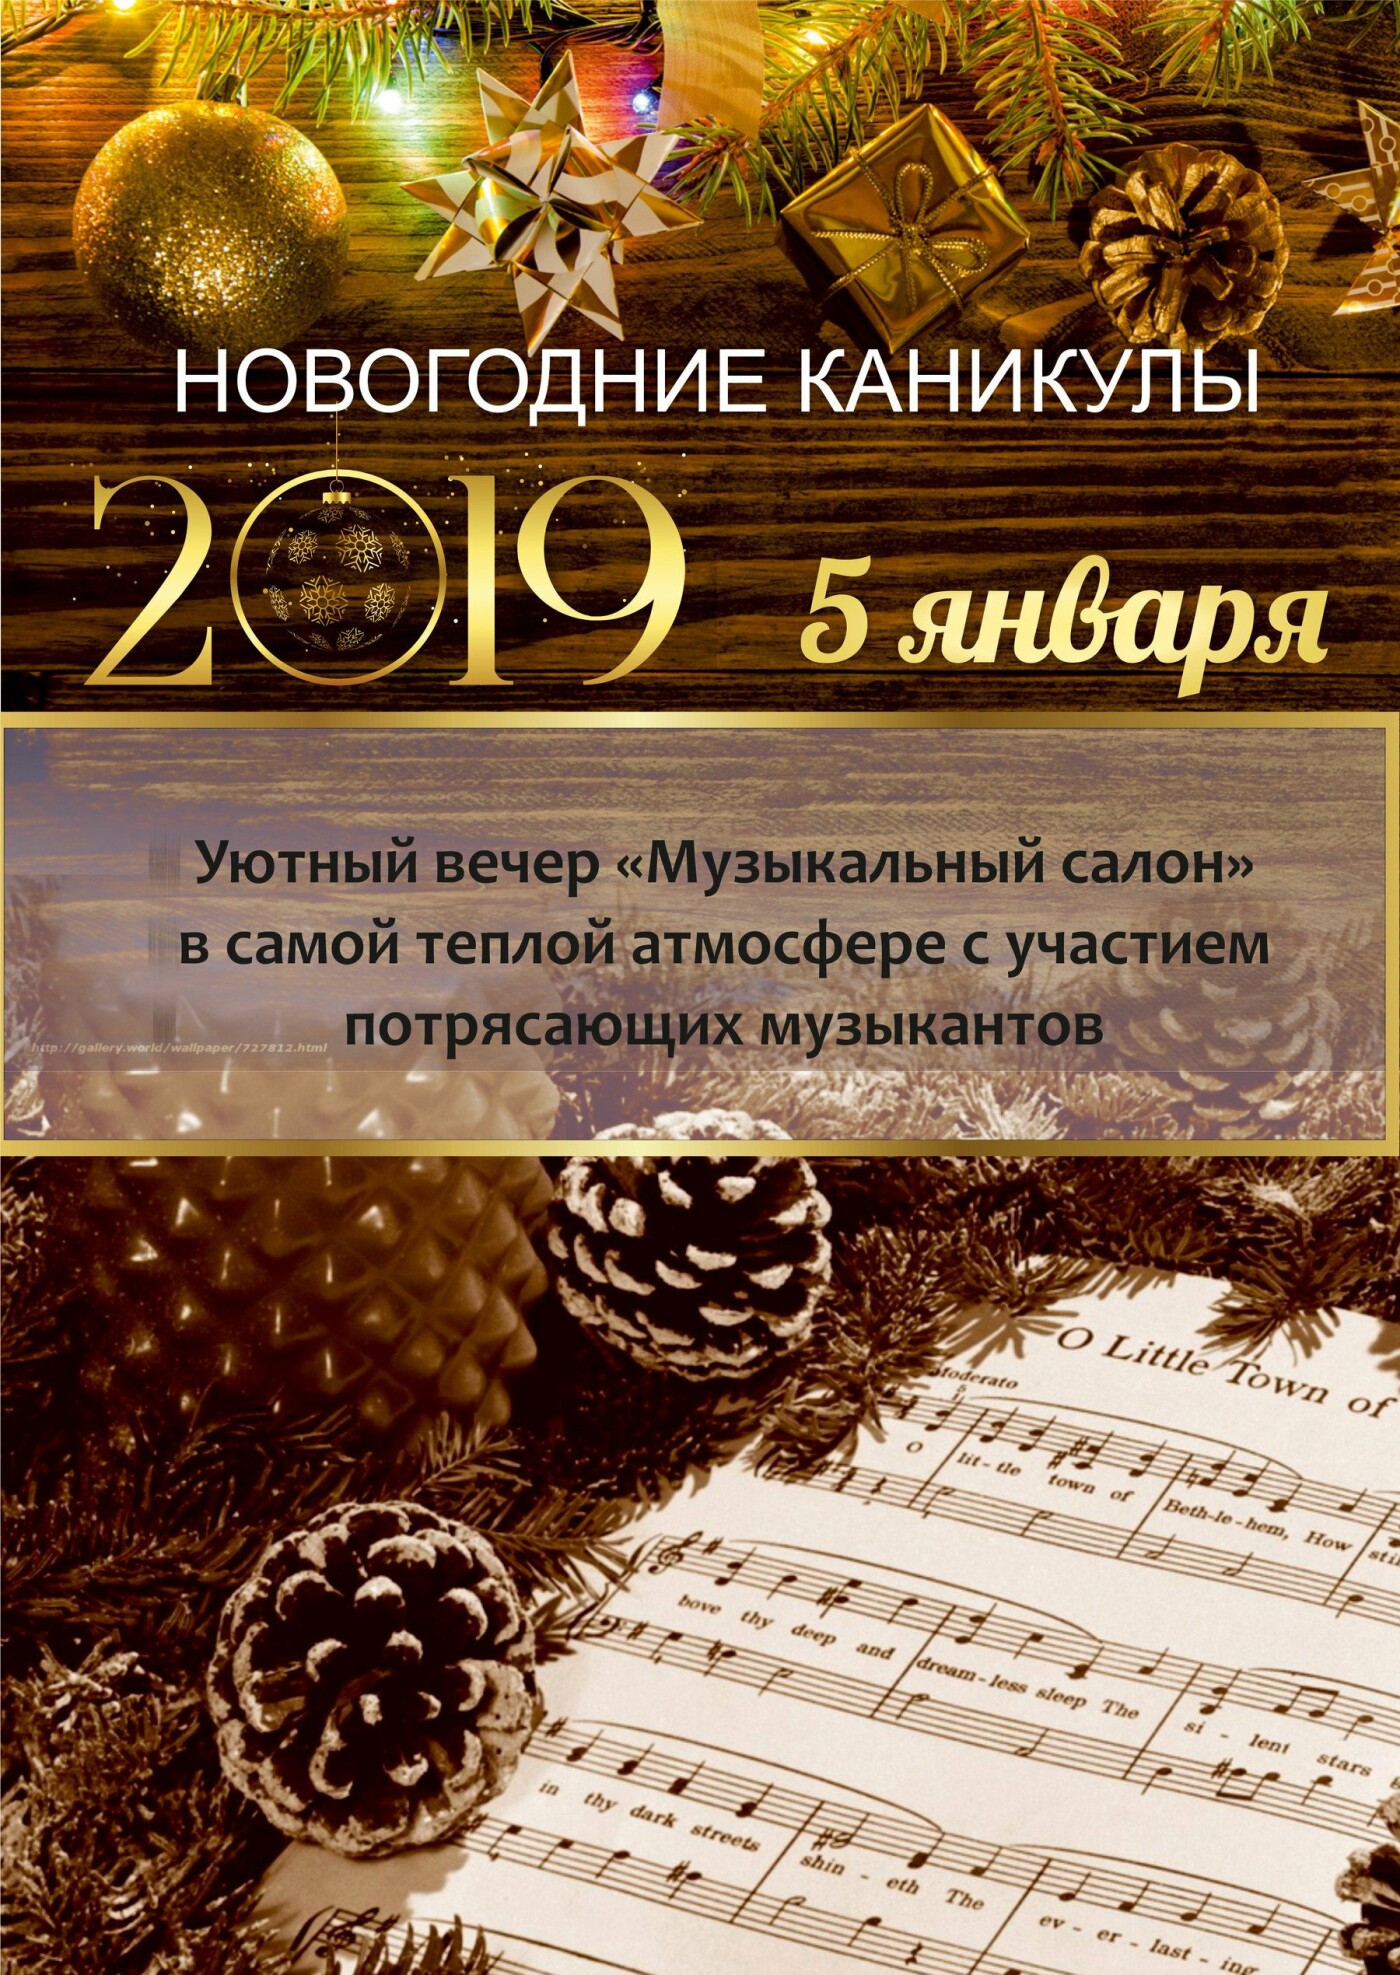 Встречайте Новый год-2019 всей семьей в санатории «Айвазовское»!, фото-7